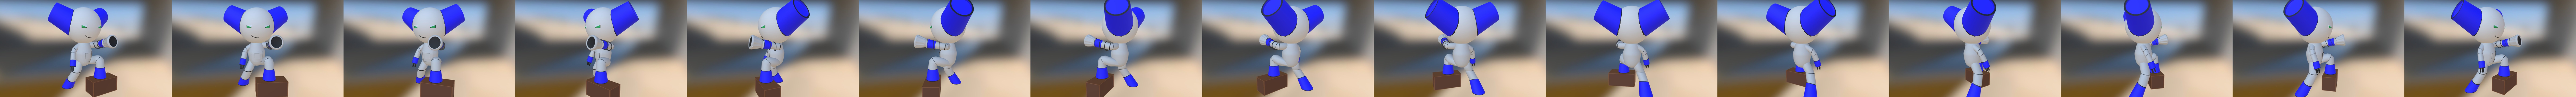 Robotboy 3D models - Sketchfab